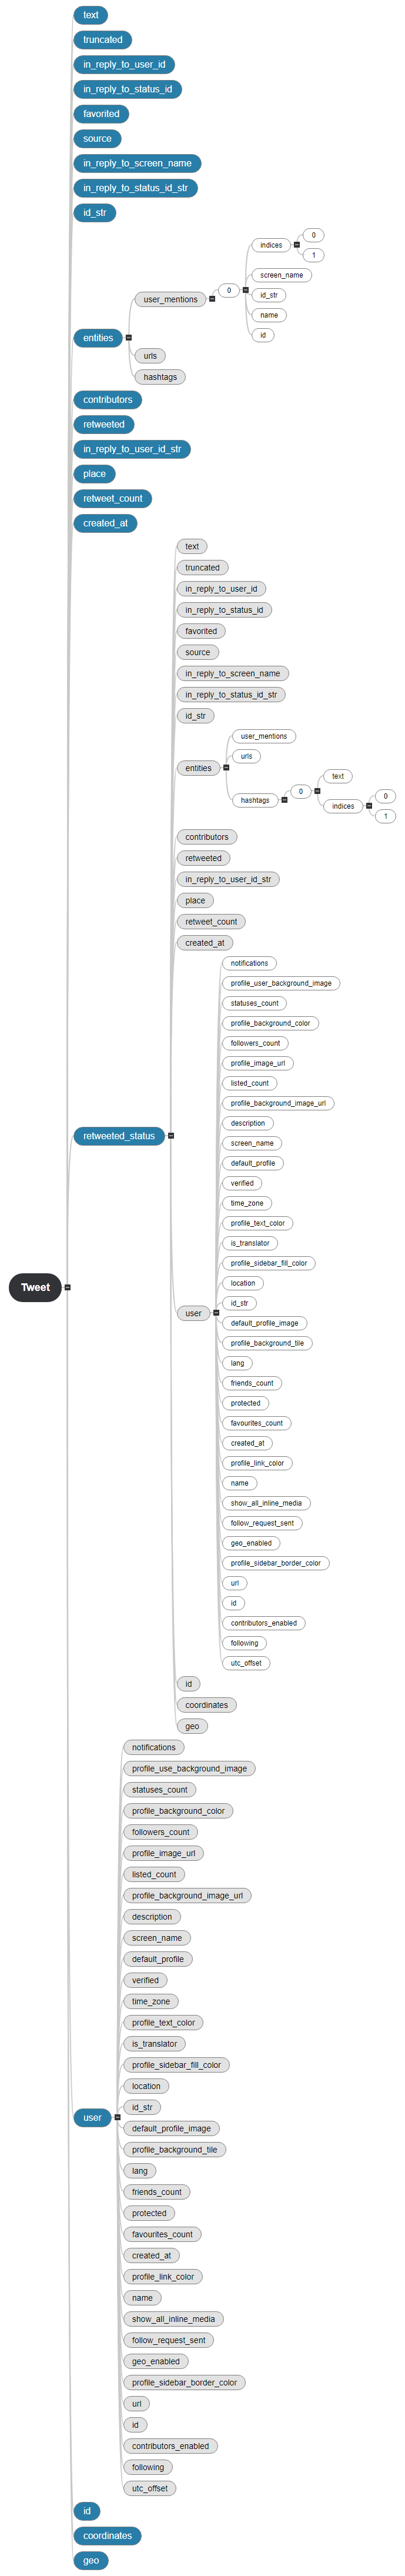 Structures des données d'un tweet Mind Map